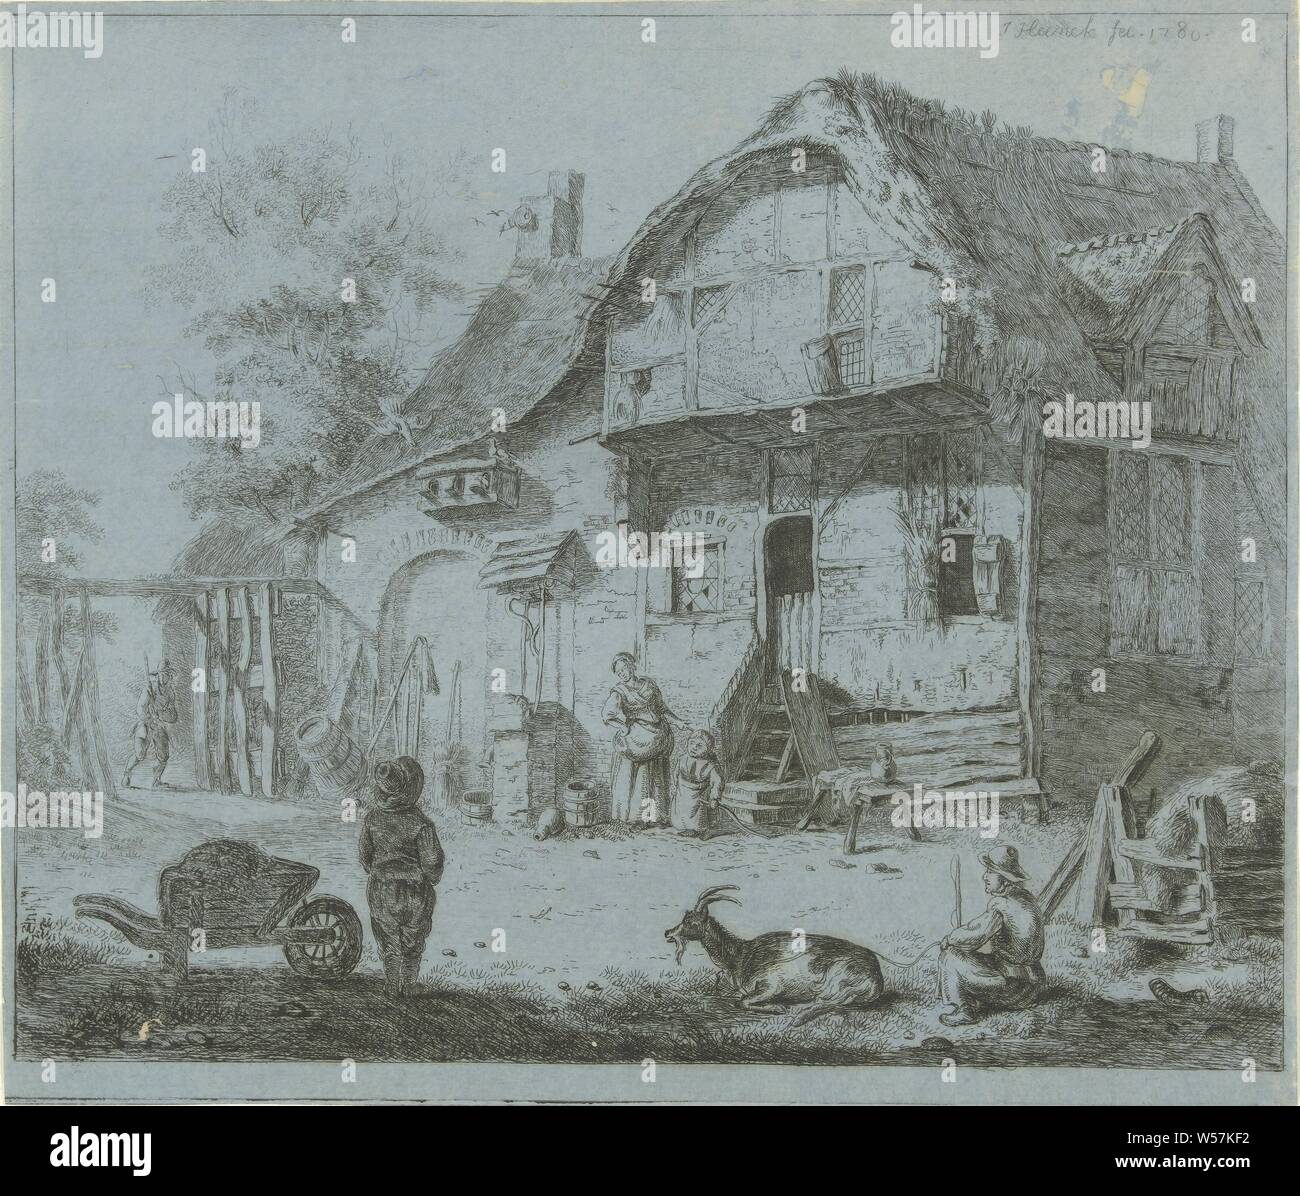 Le figure in un casale, azienda o casa solitario nel paesaggio, carriola, capro billy-capra, Jabes Heenck (menzionato in oggetto), il nord dei Paesi Bassi 1780, carta, attacco, w 210 mm × h 246 mm Foto Stock